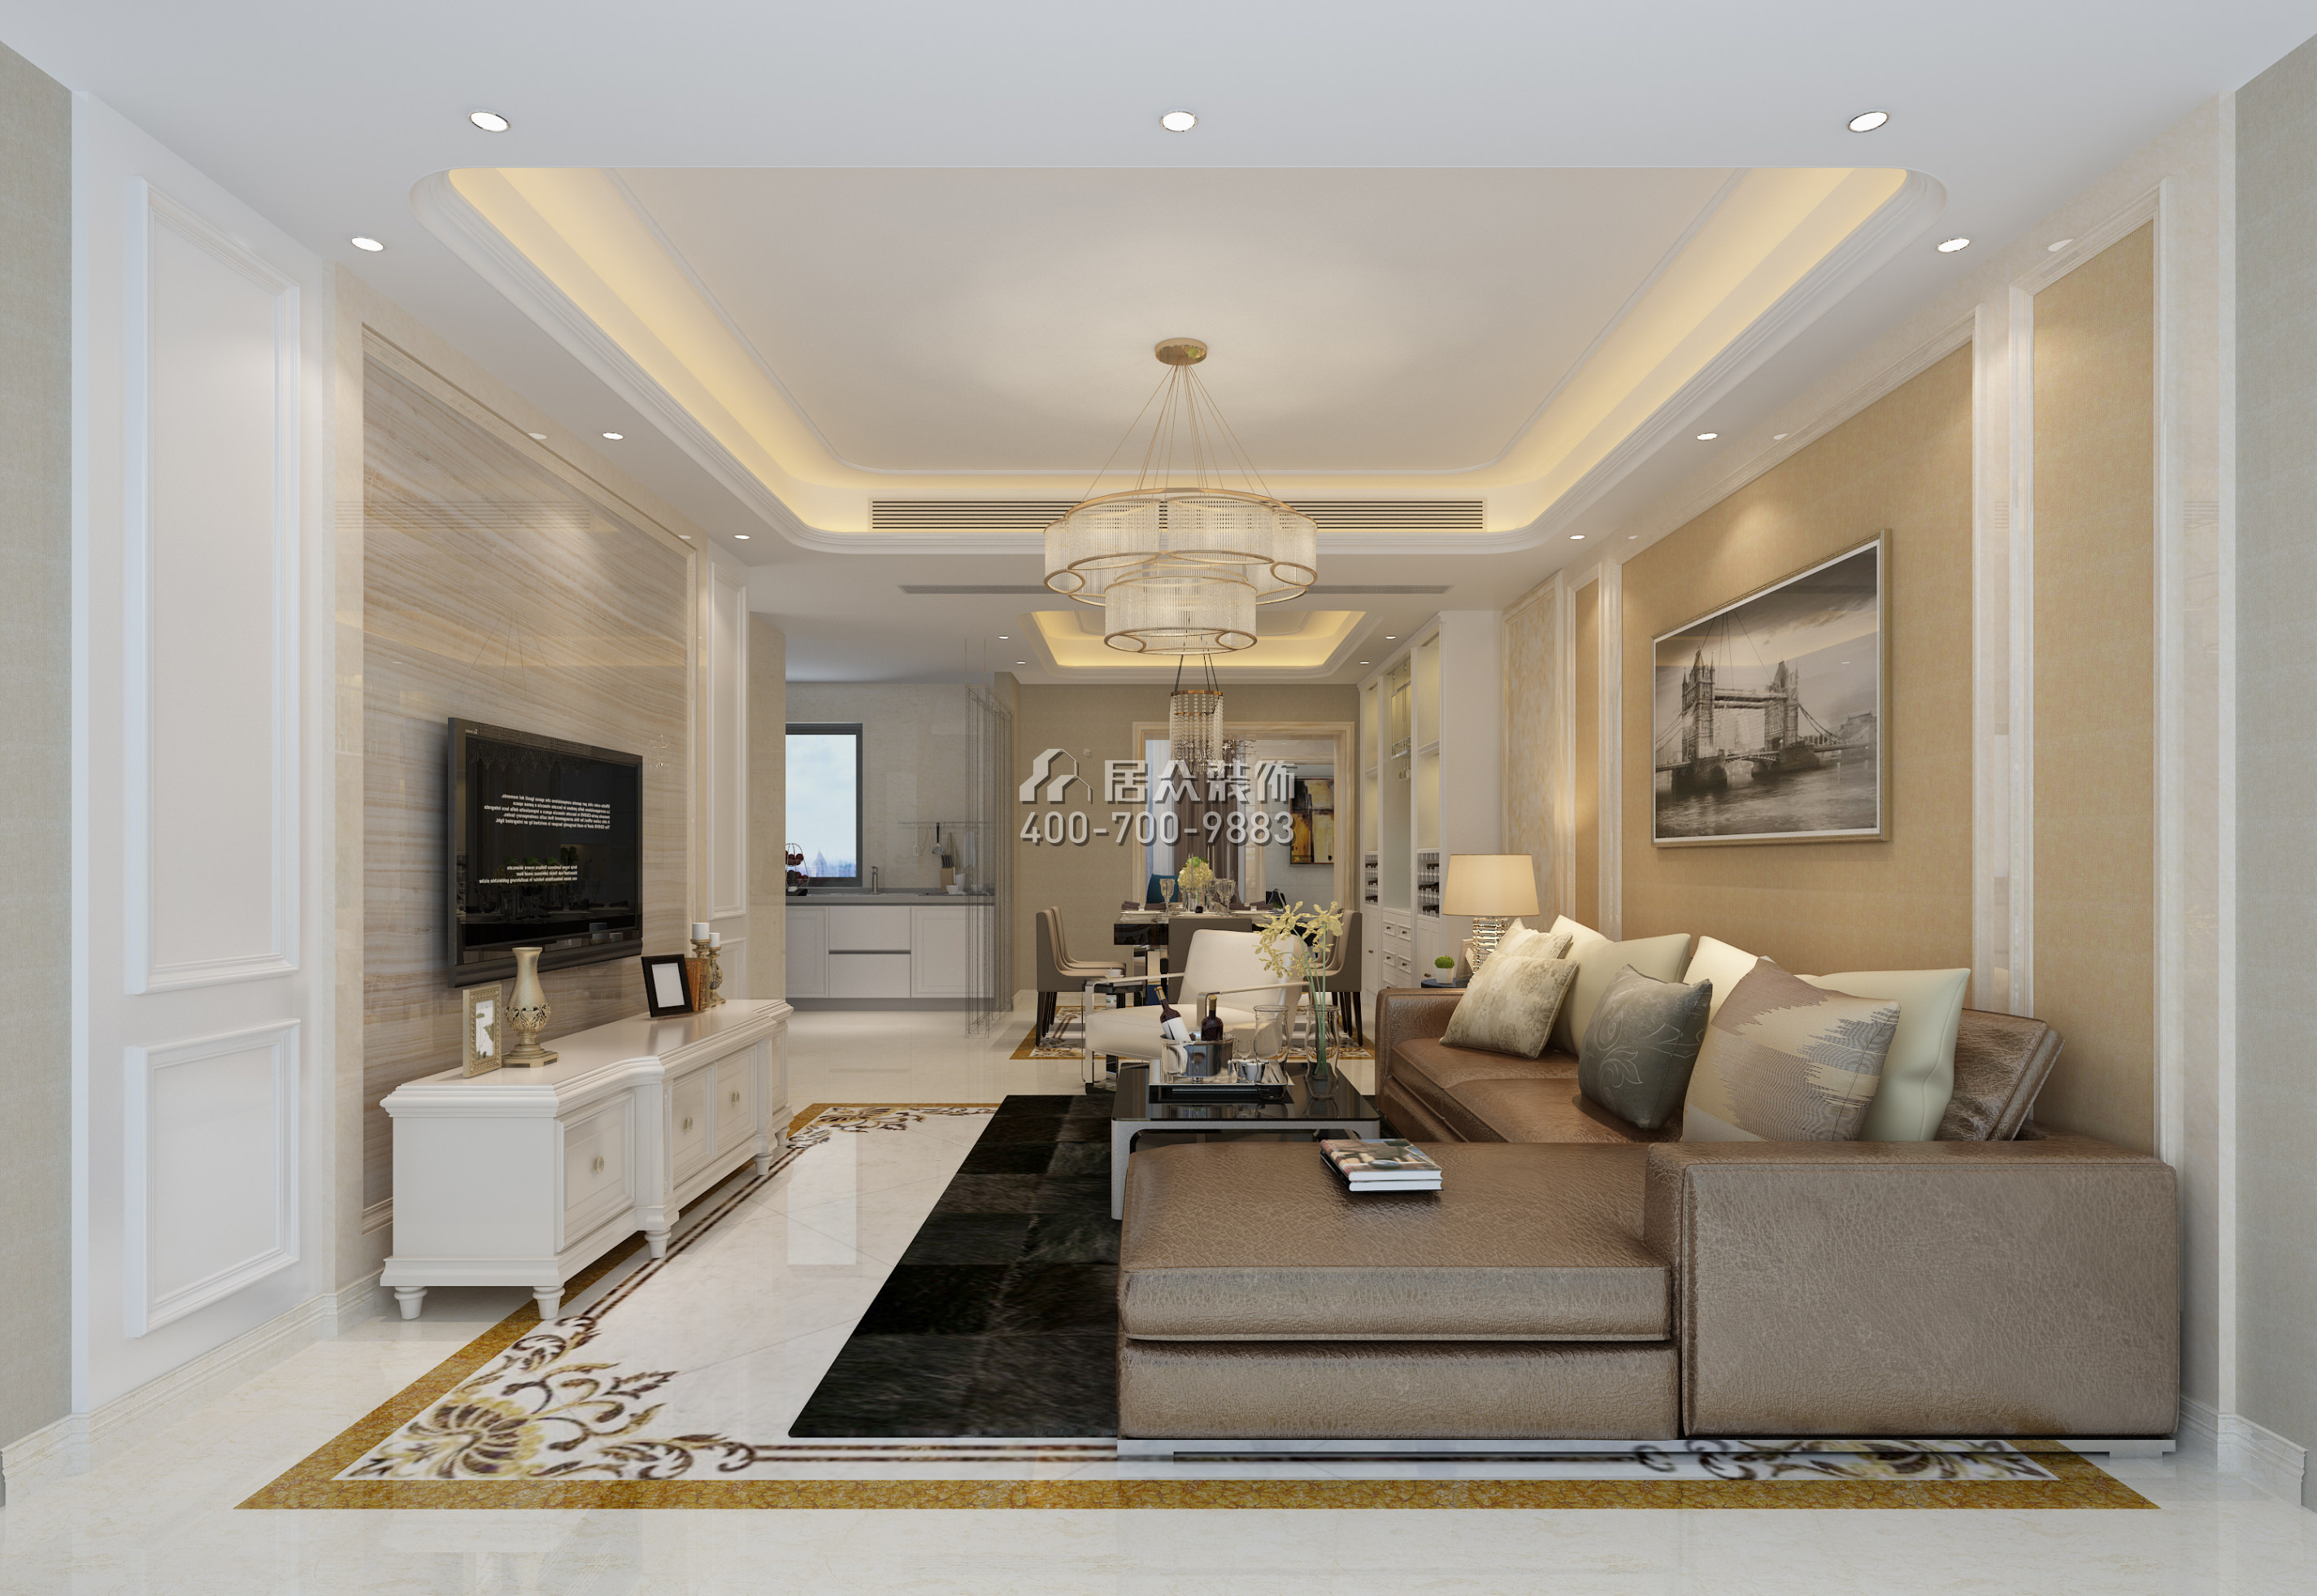 龙瑞佳园144平方米现代简约风格平层户型客厅装修效果图